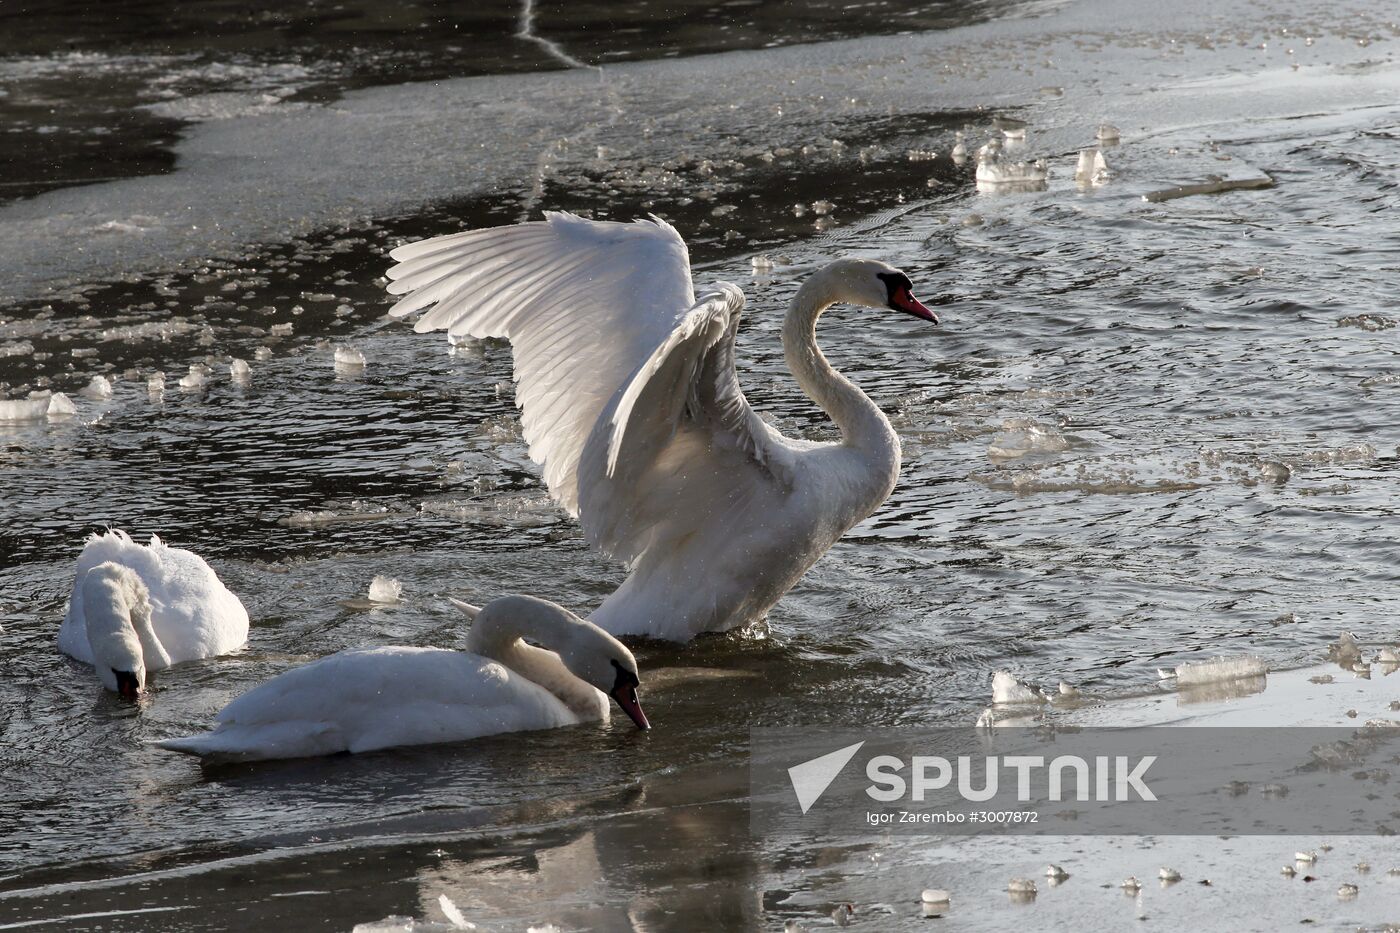 Swans in Baltiysk's harbor